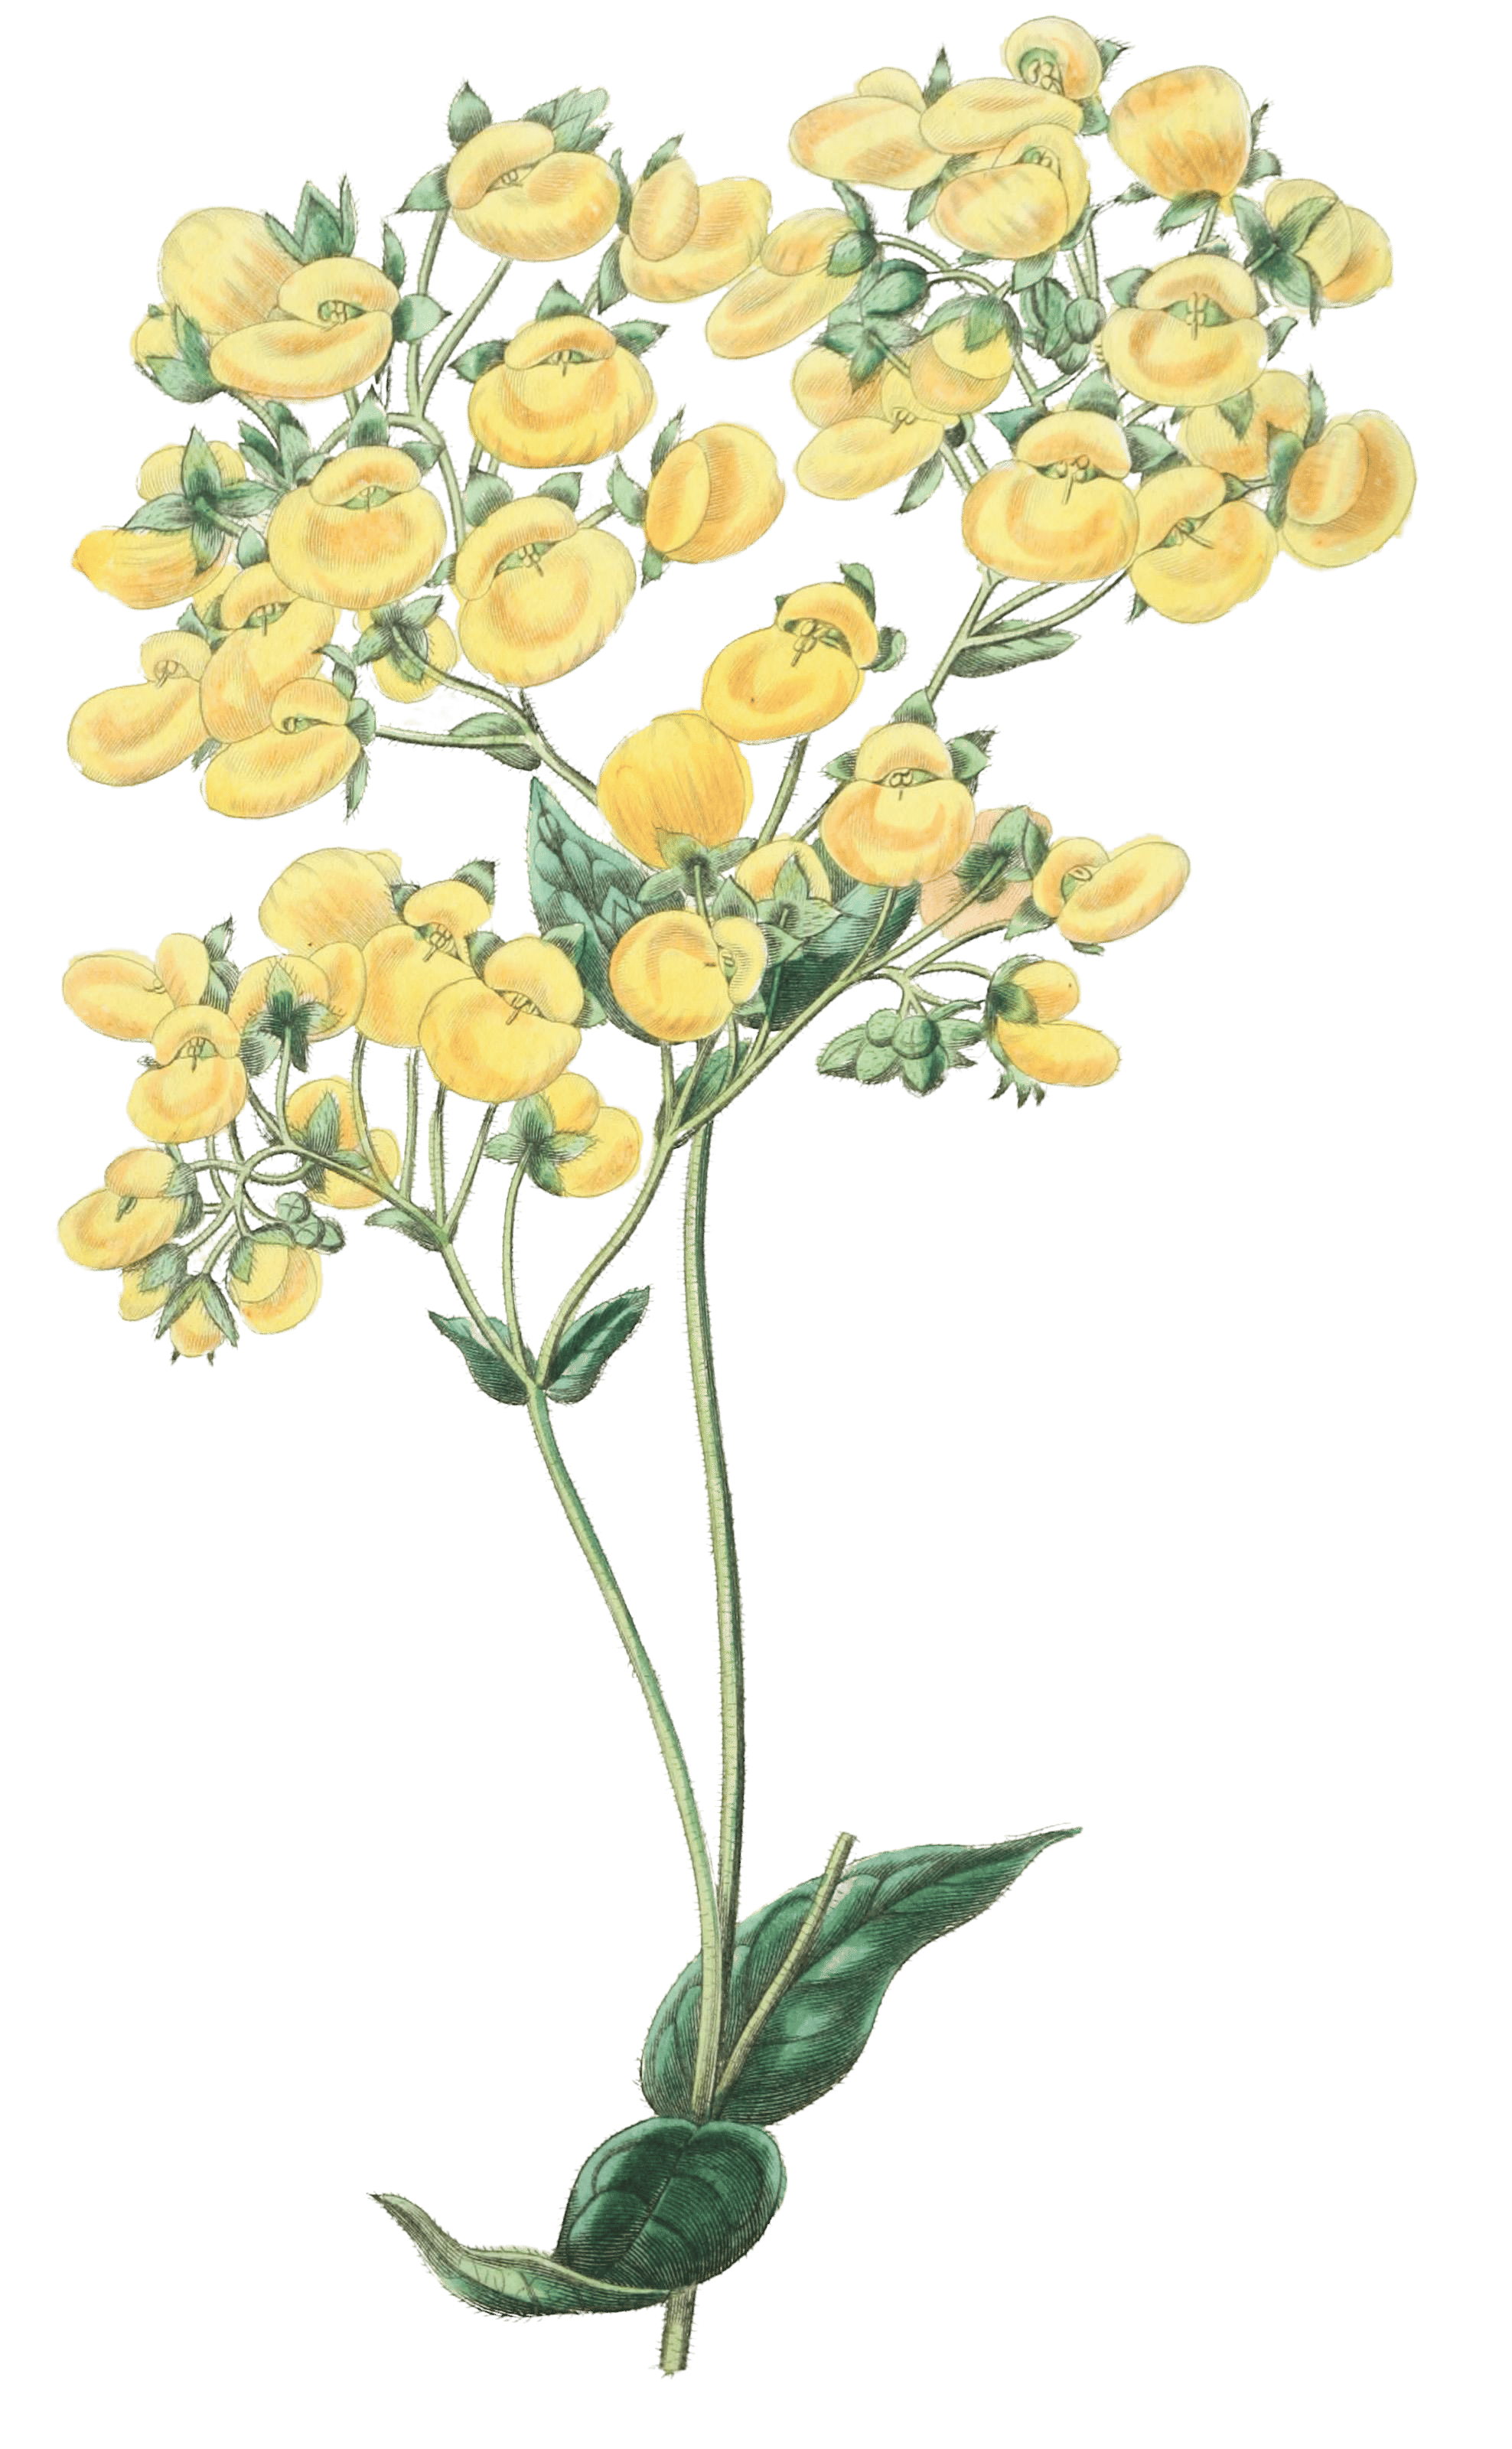 The Chiloe Slipper Flower